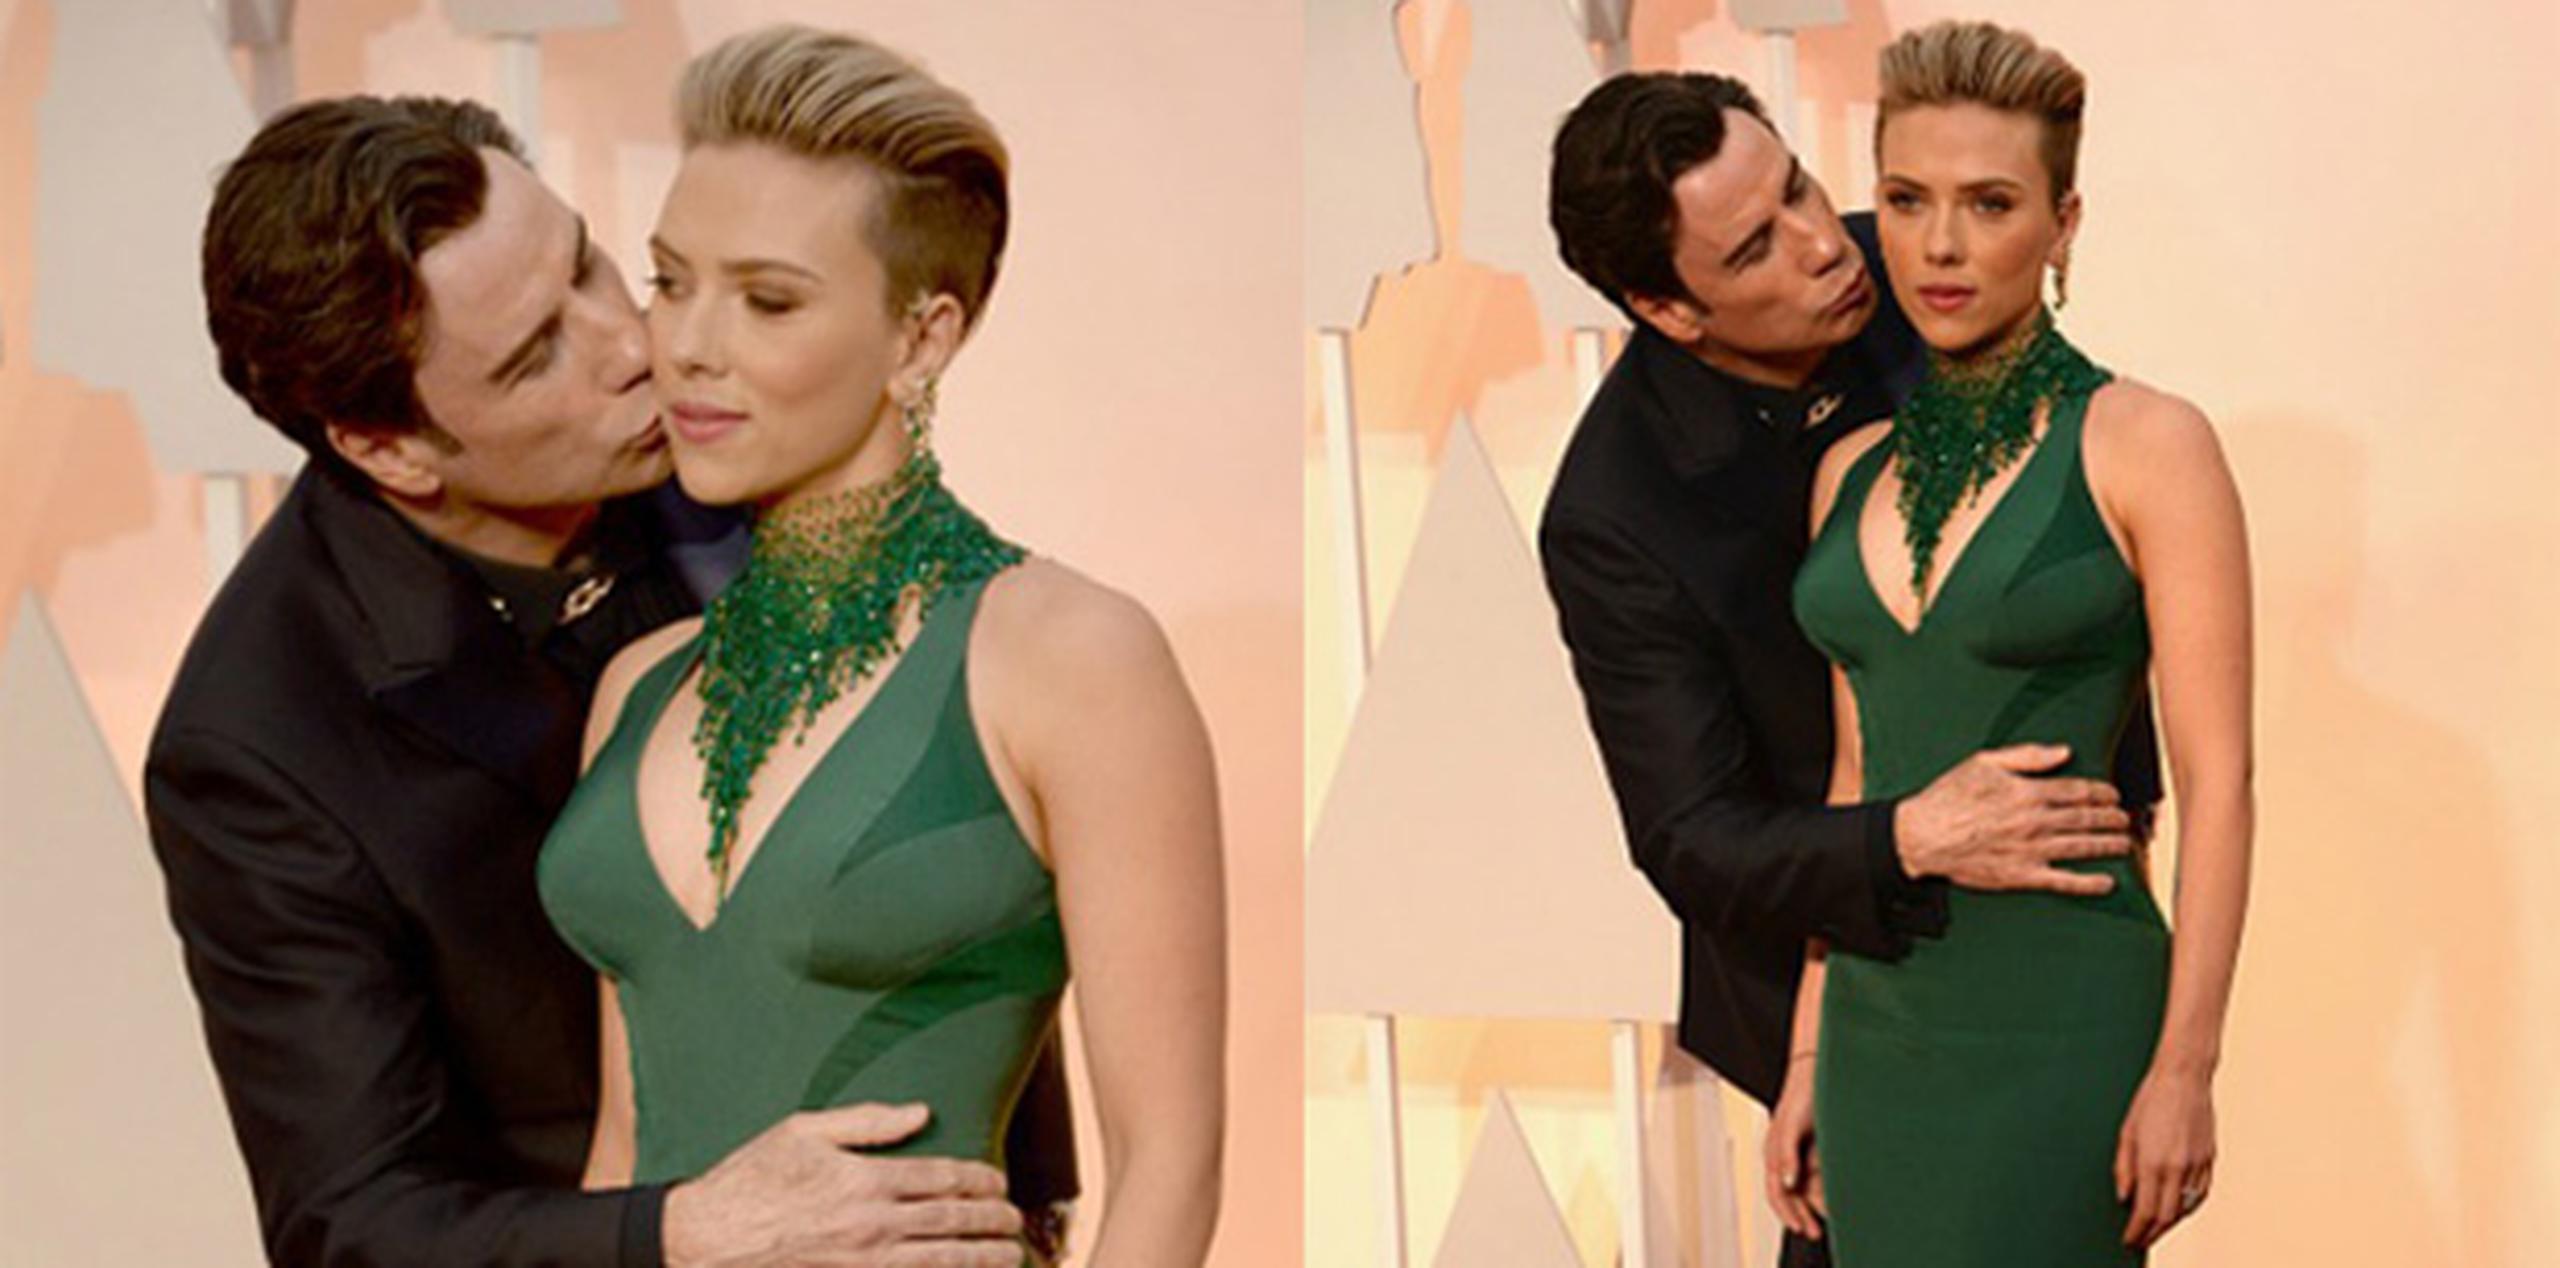 Imágenes de Travolta besando a Scarlett Johansson frente a los fotógrafos en la alfombra roja se volvieron virales, convirtiendo al astro en un chiste en las redes.  (AP)